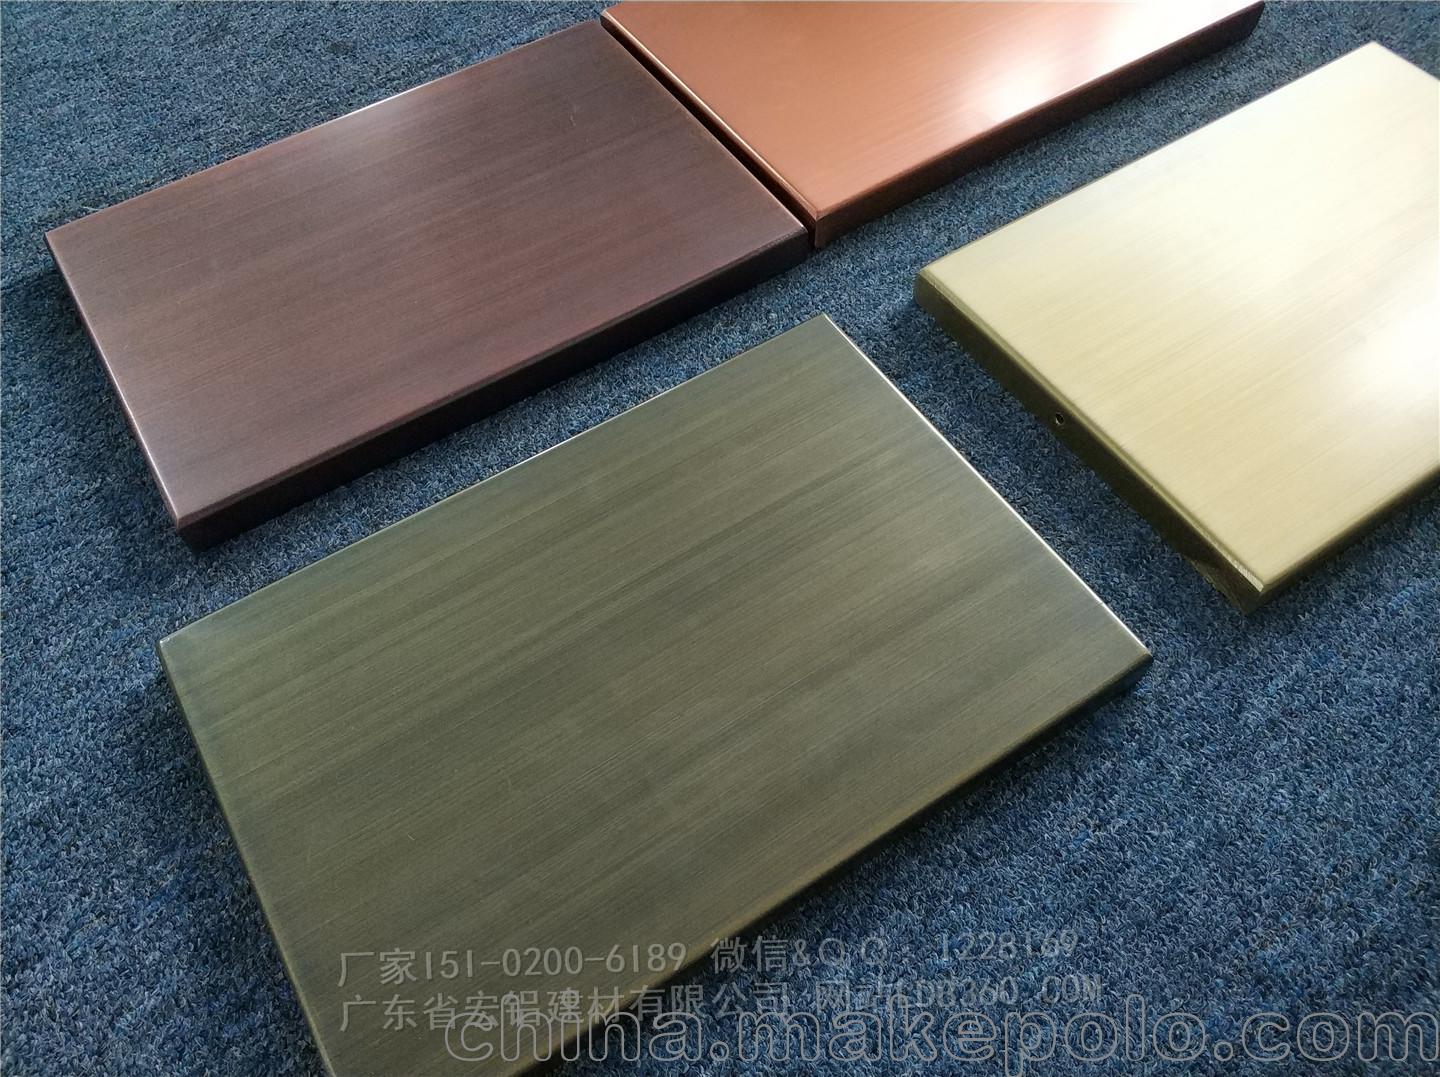 古铜色拉丝铝单板幕板材料-「铝合金外墙板」